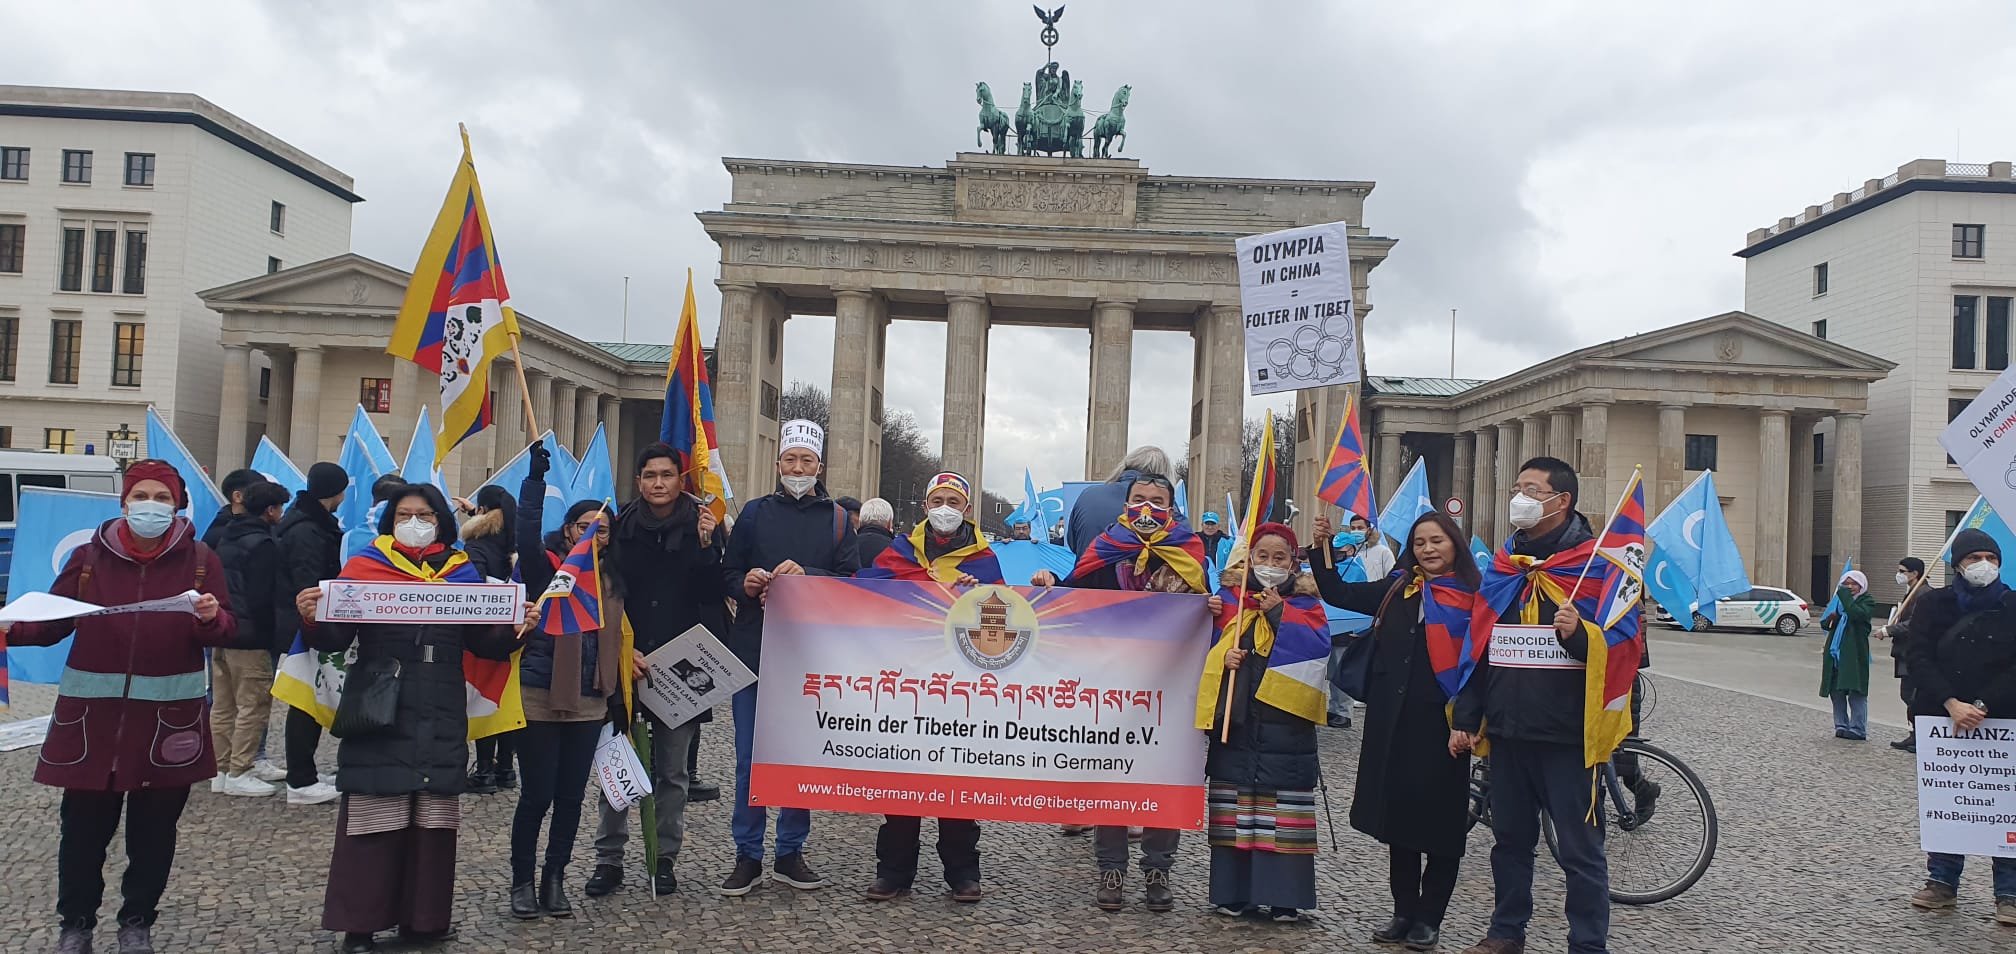 Тибетська асоціація в Німеччині разом із тибетськими групами закликала до дипломатичного бойкоту Олімпійських ігор у Пекіні 2022 р. 2 тибетські громади в Швейцарії та Німеччині закликають до дипломатичного бойкоту Олімпійських ігор у Пекіні 2022 р.